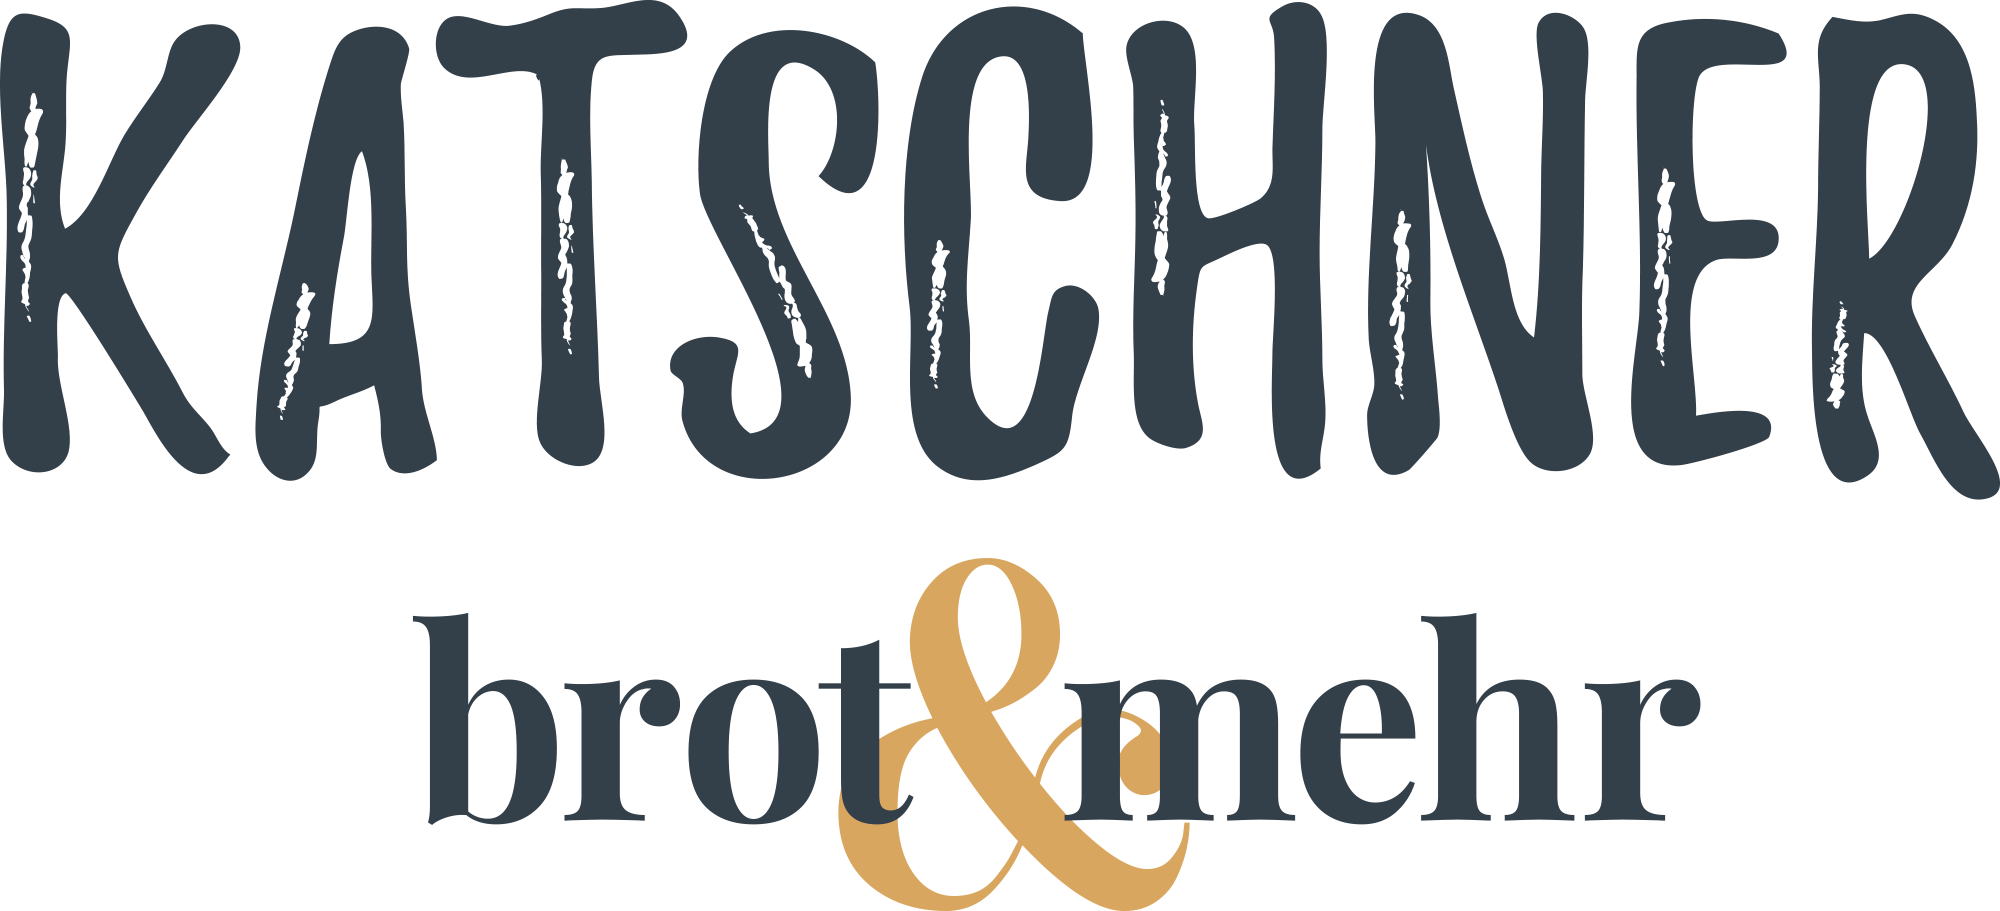 2021-09-03_BGK_Logo_Katschner-Brot&mehr-RGB_anthrazit-300dpi